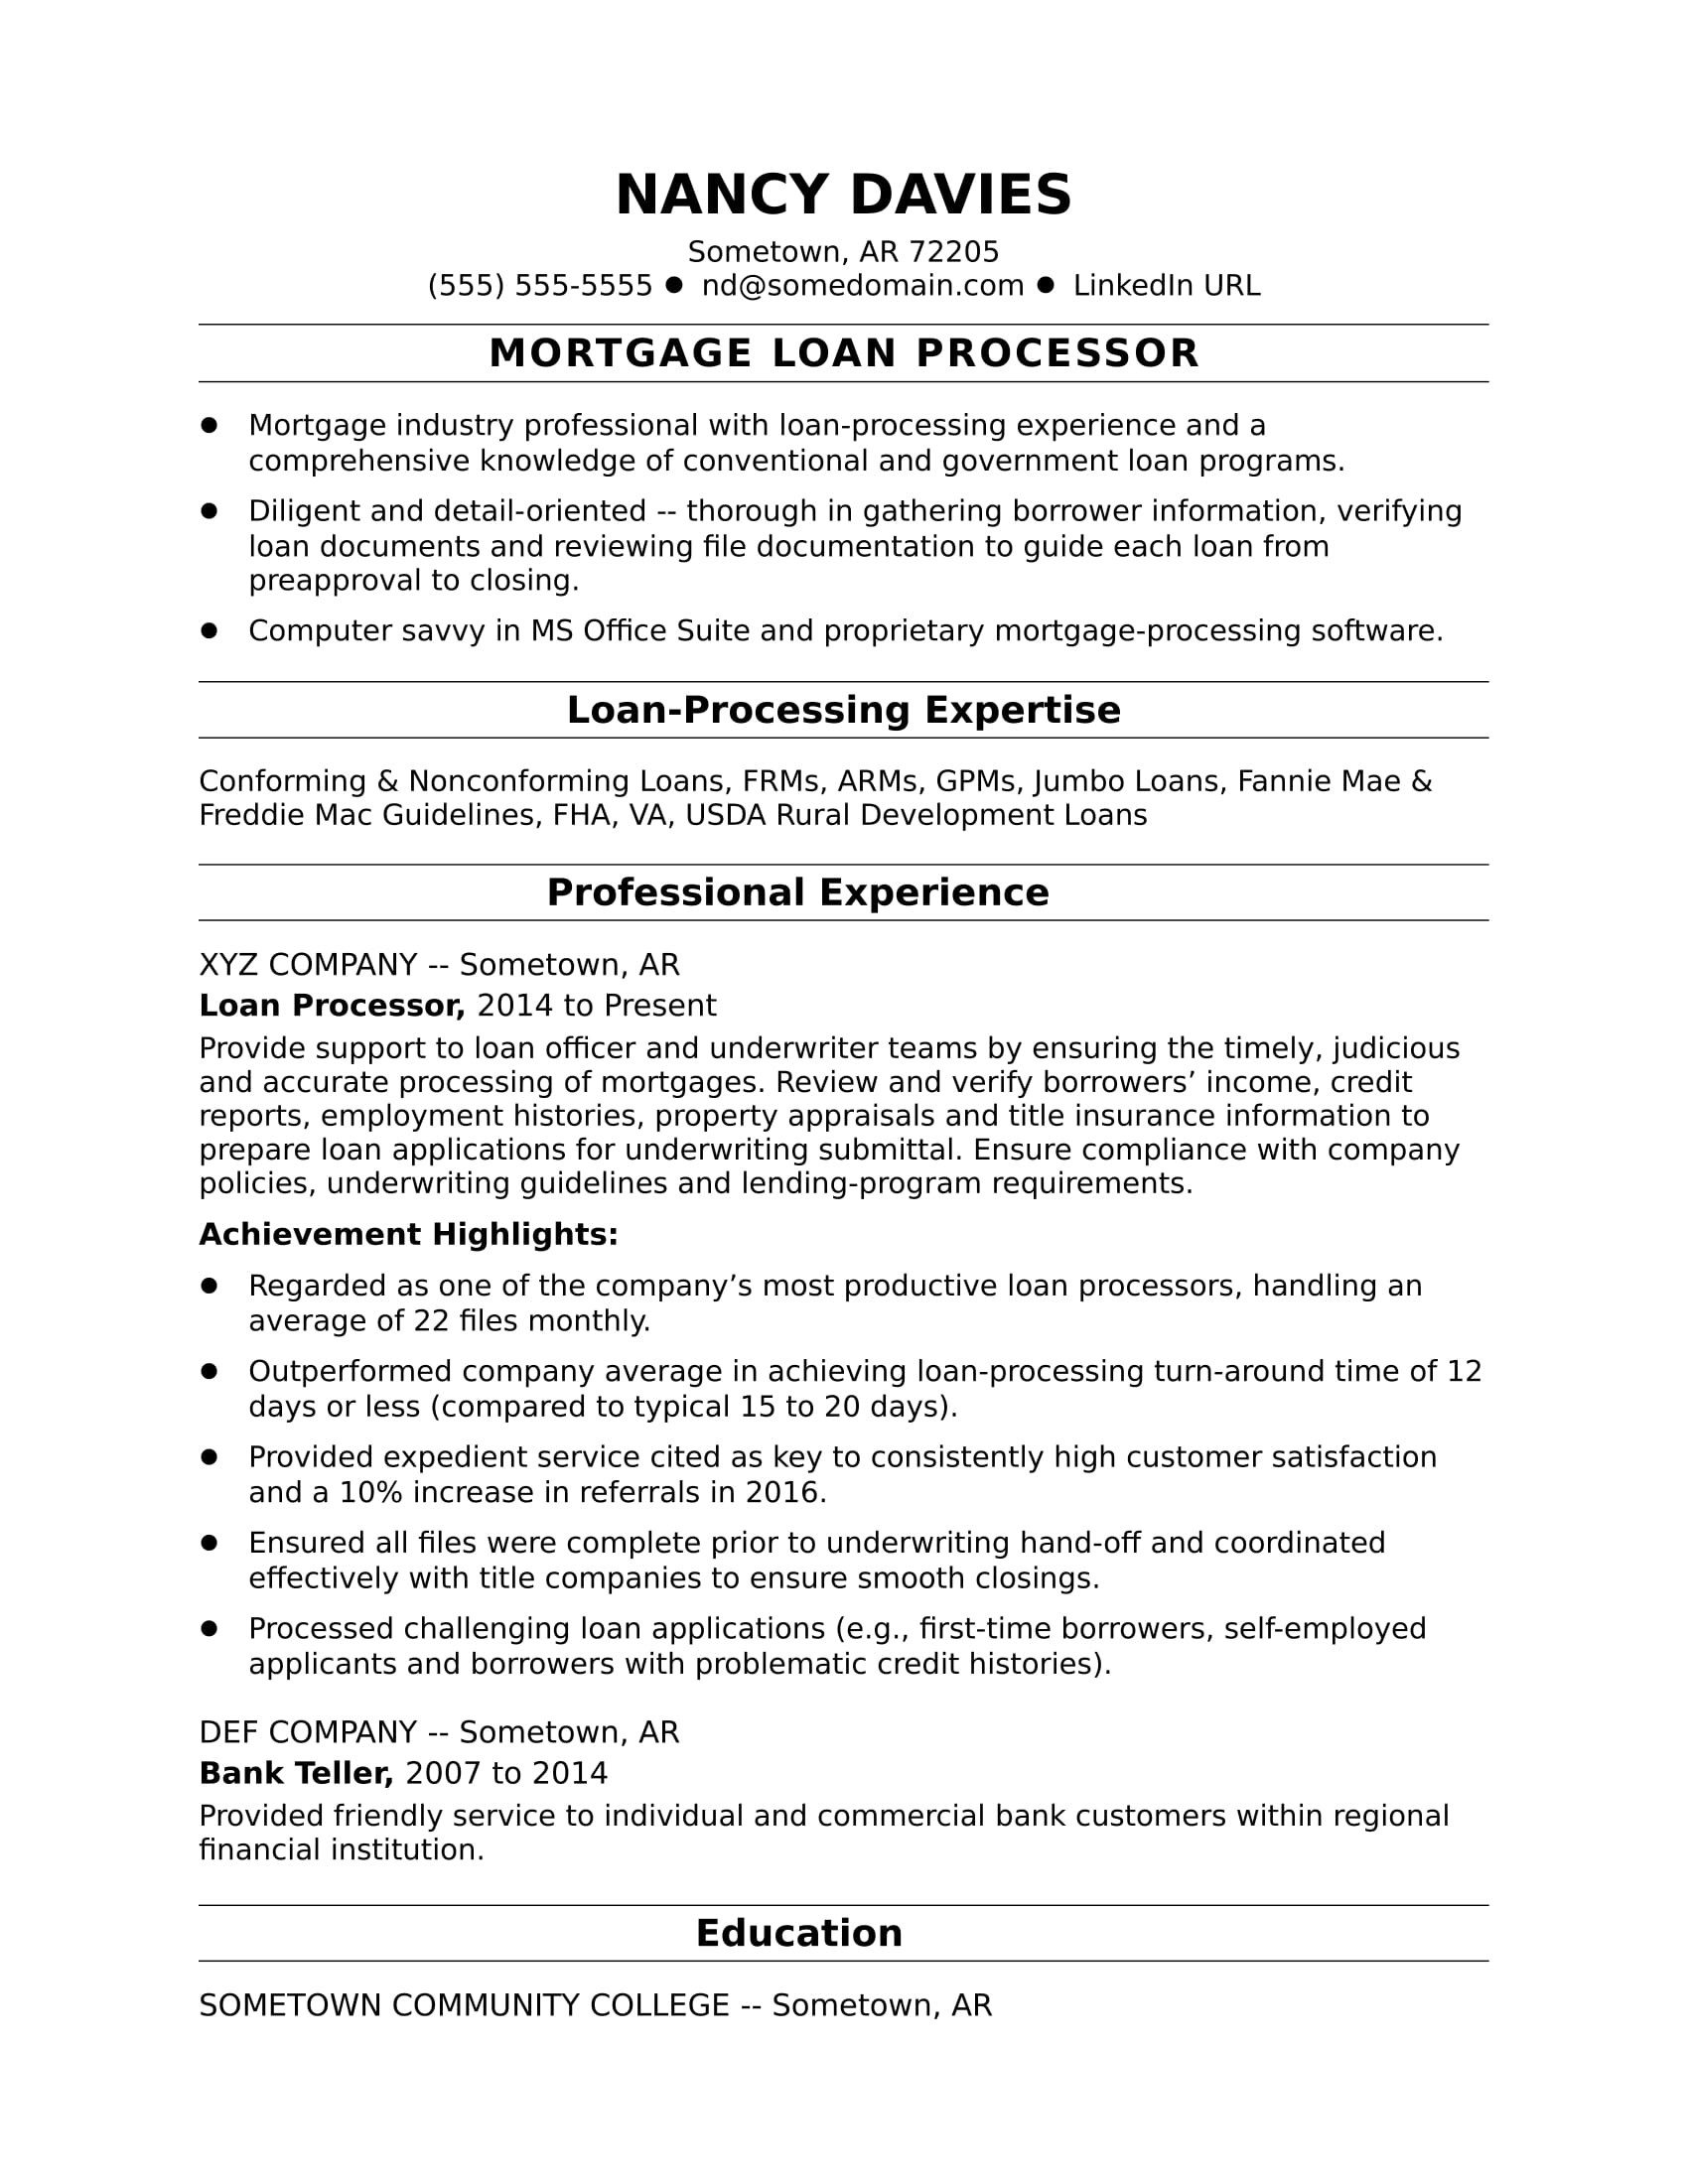 Process Server Resume Best Sample Resume Mortgage Loan Processor Resume Sample Monster.com